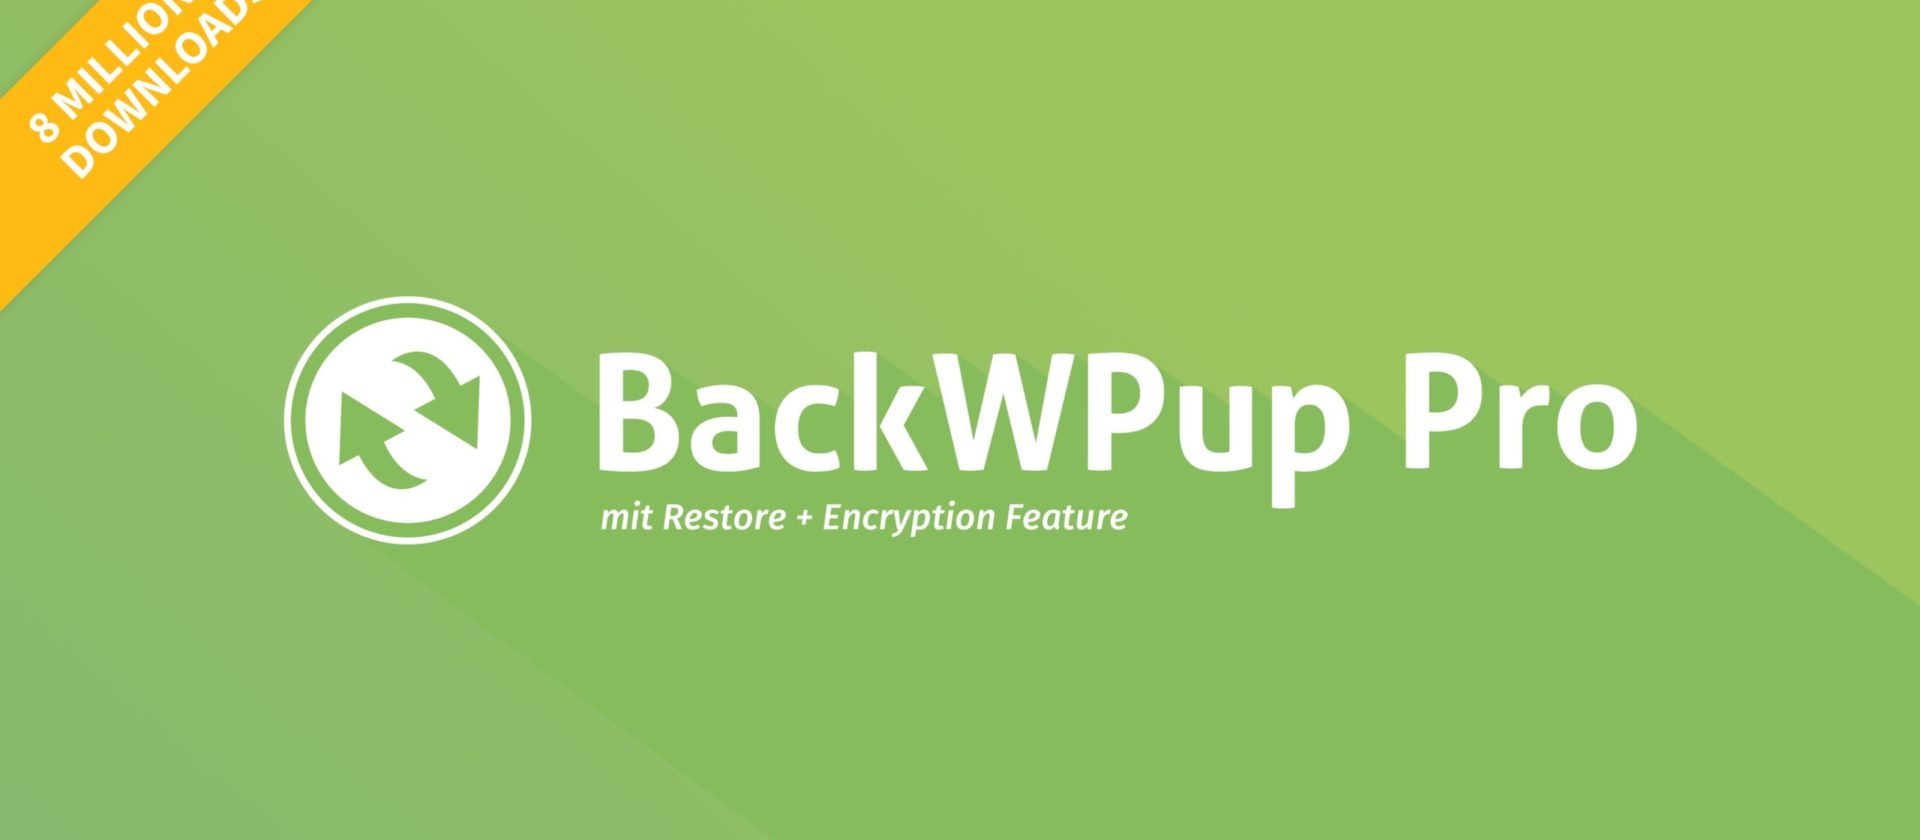 BackWPup feiert 8 Millionen Downloads